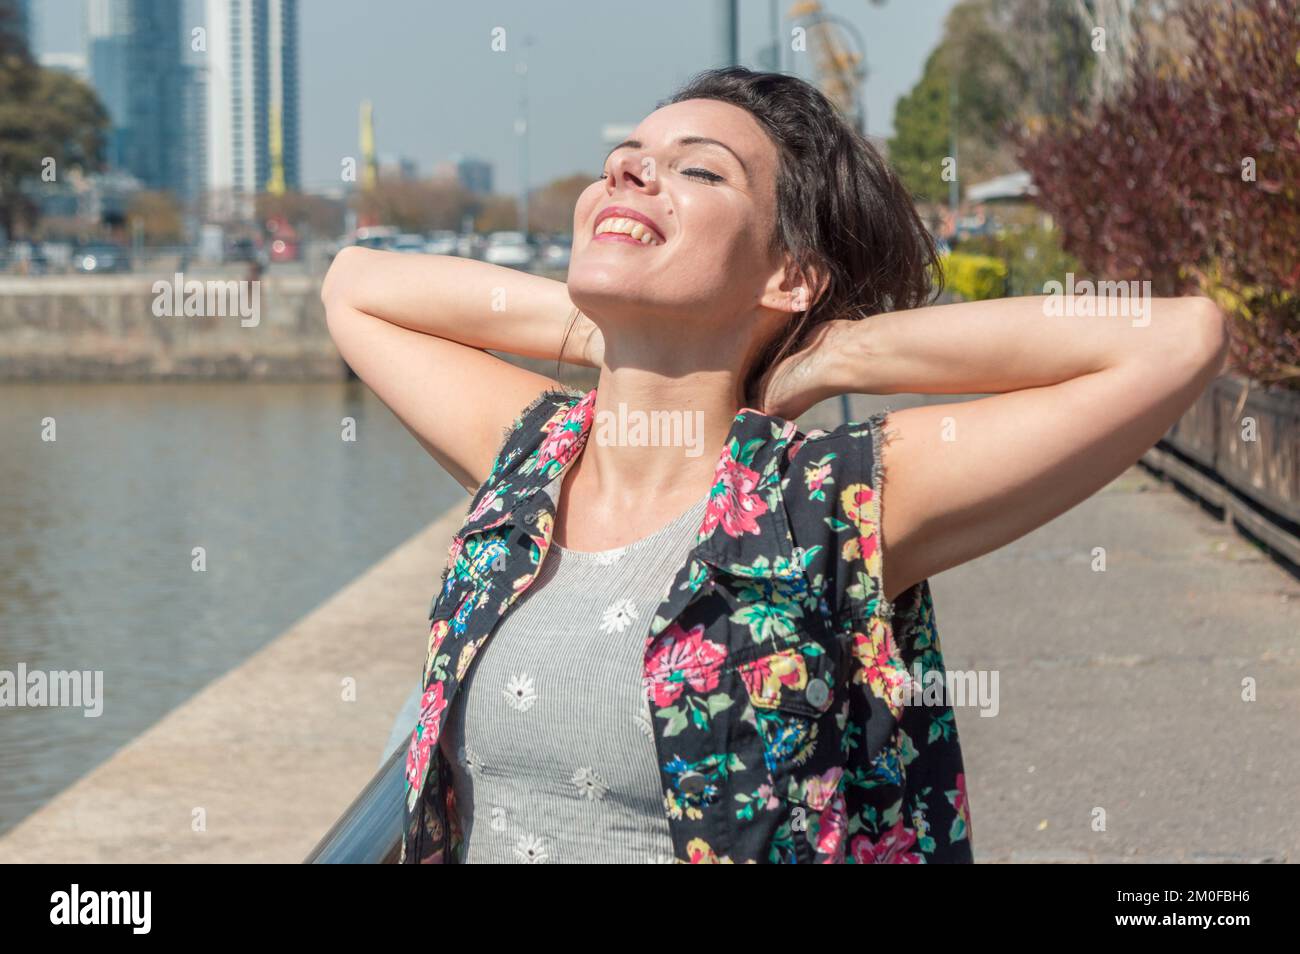 femme touriste caucasienne adulte avec les yeux fermés et souriant est détendue avec ses mains derrière son cou, respirer de l'air frais et se promener dans la ville. Banque D'Images